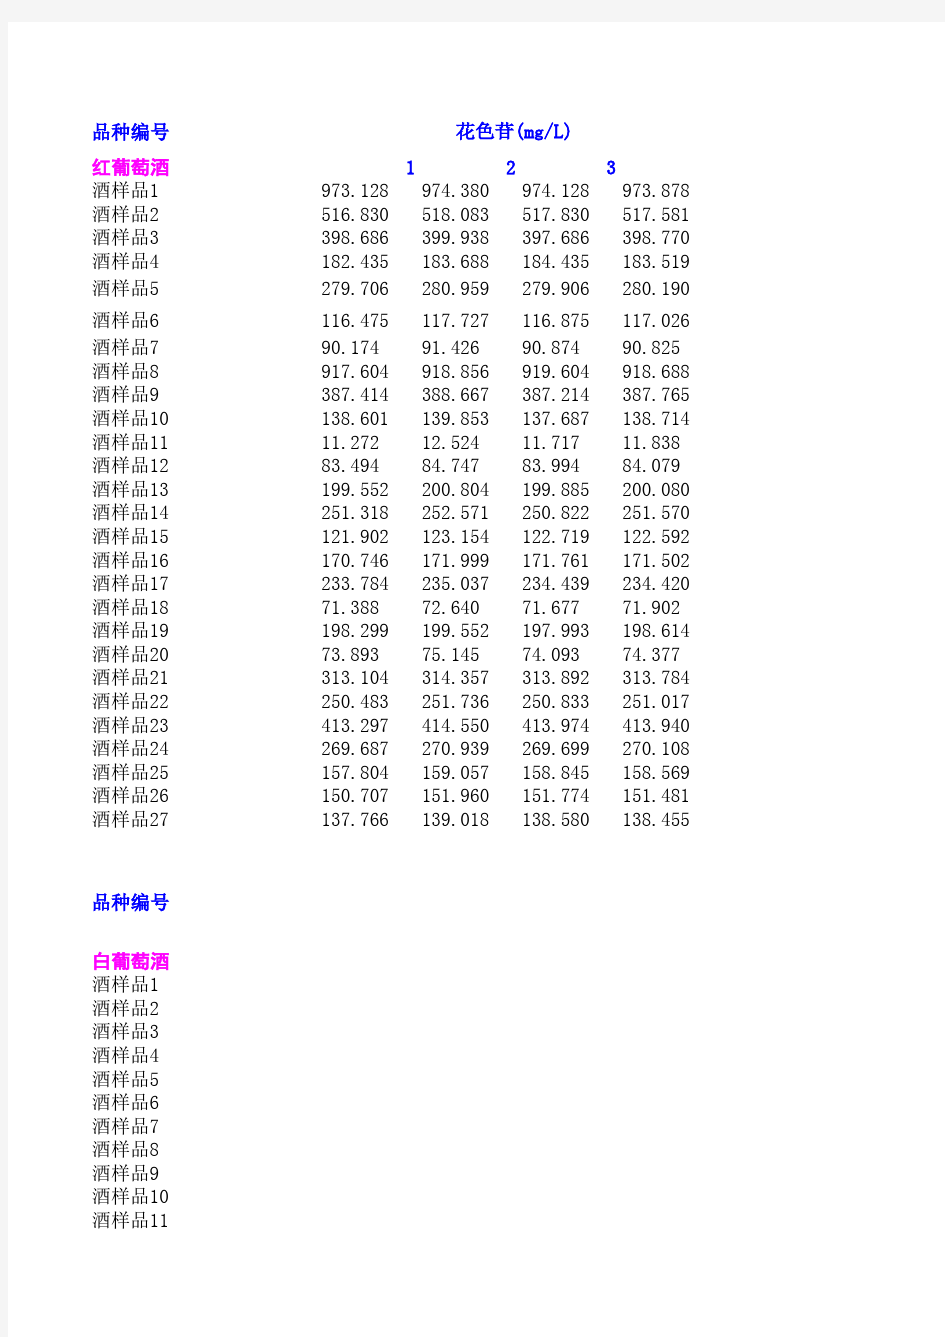 2012年数学建模A题附件2-指标总表